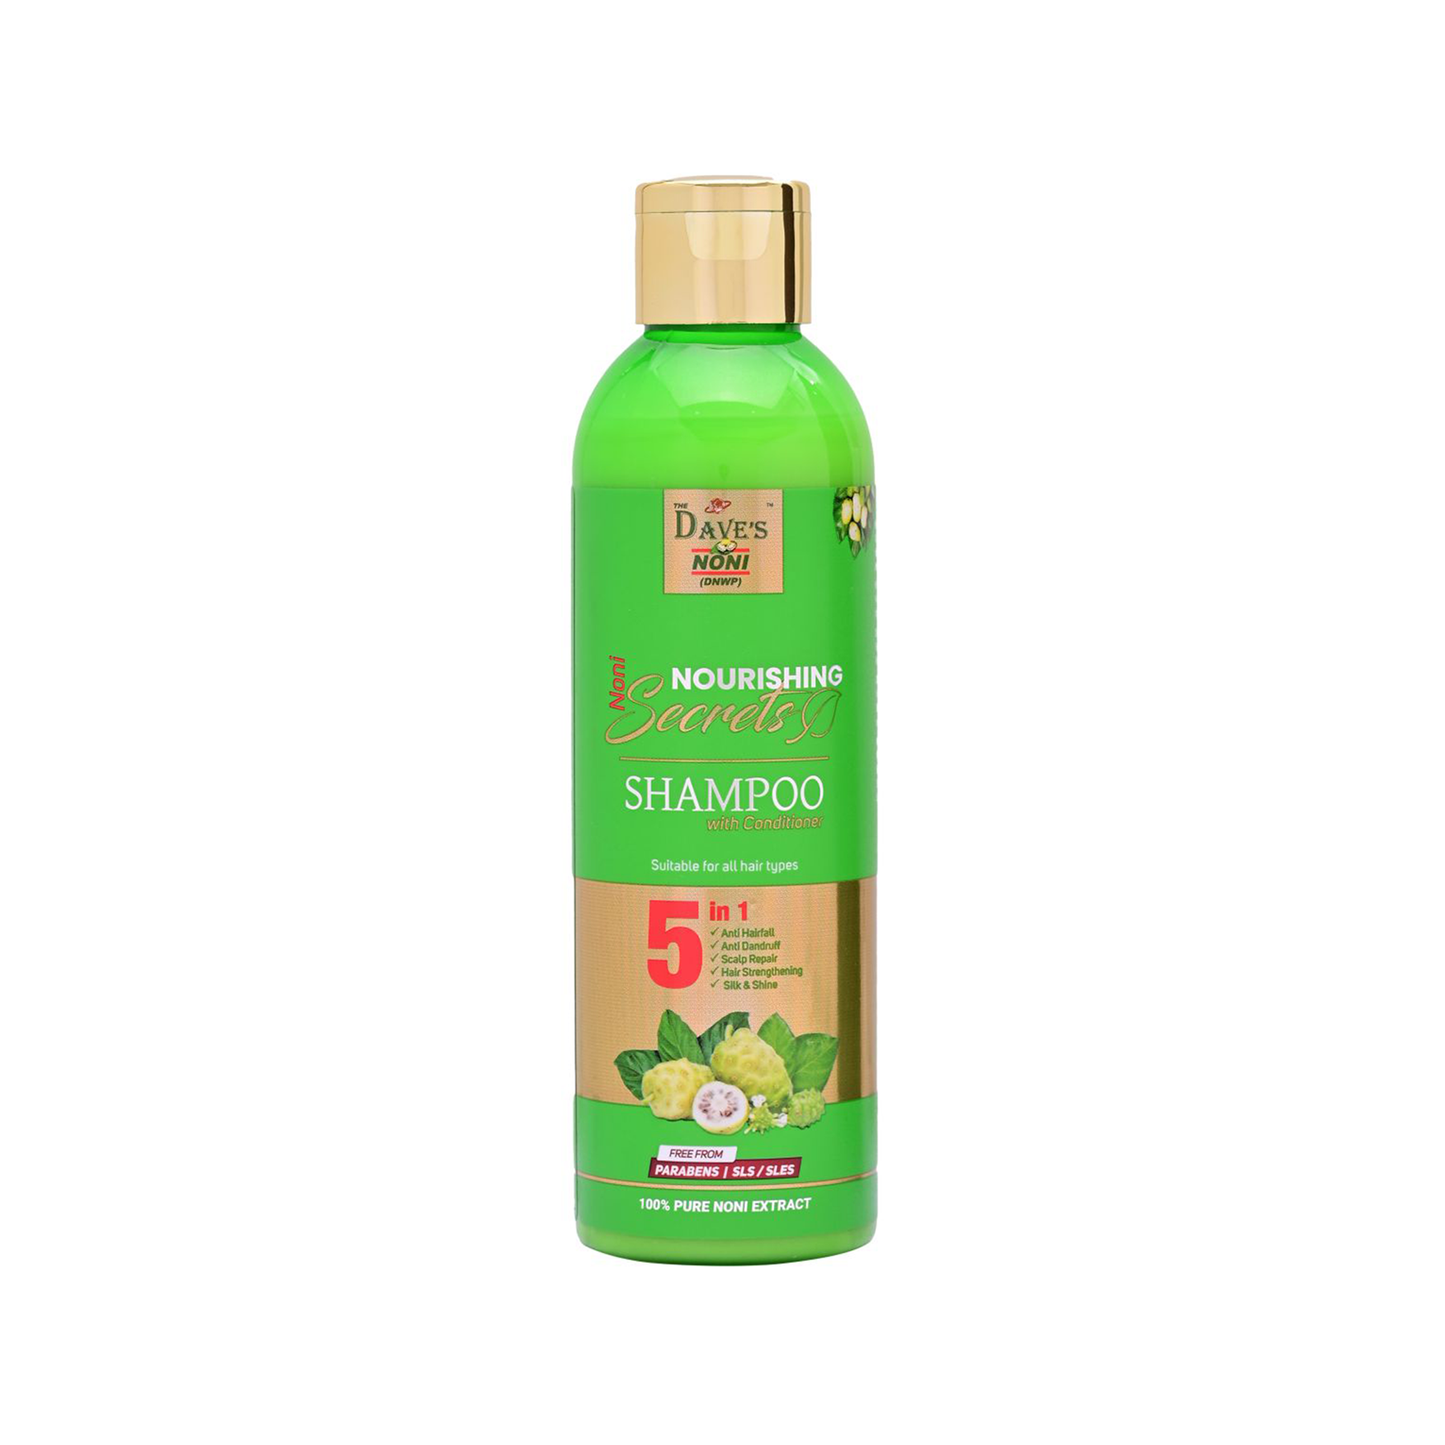 The Dave's Noni Nourishing Secrets Shampoo with Conditioner, 200ml